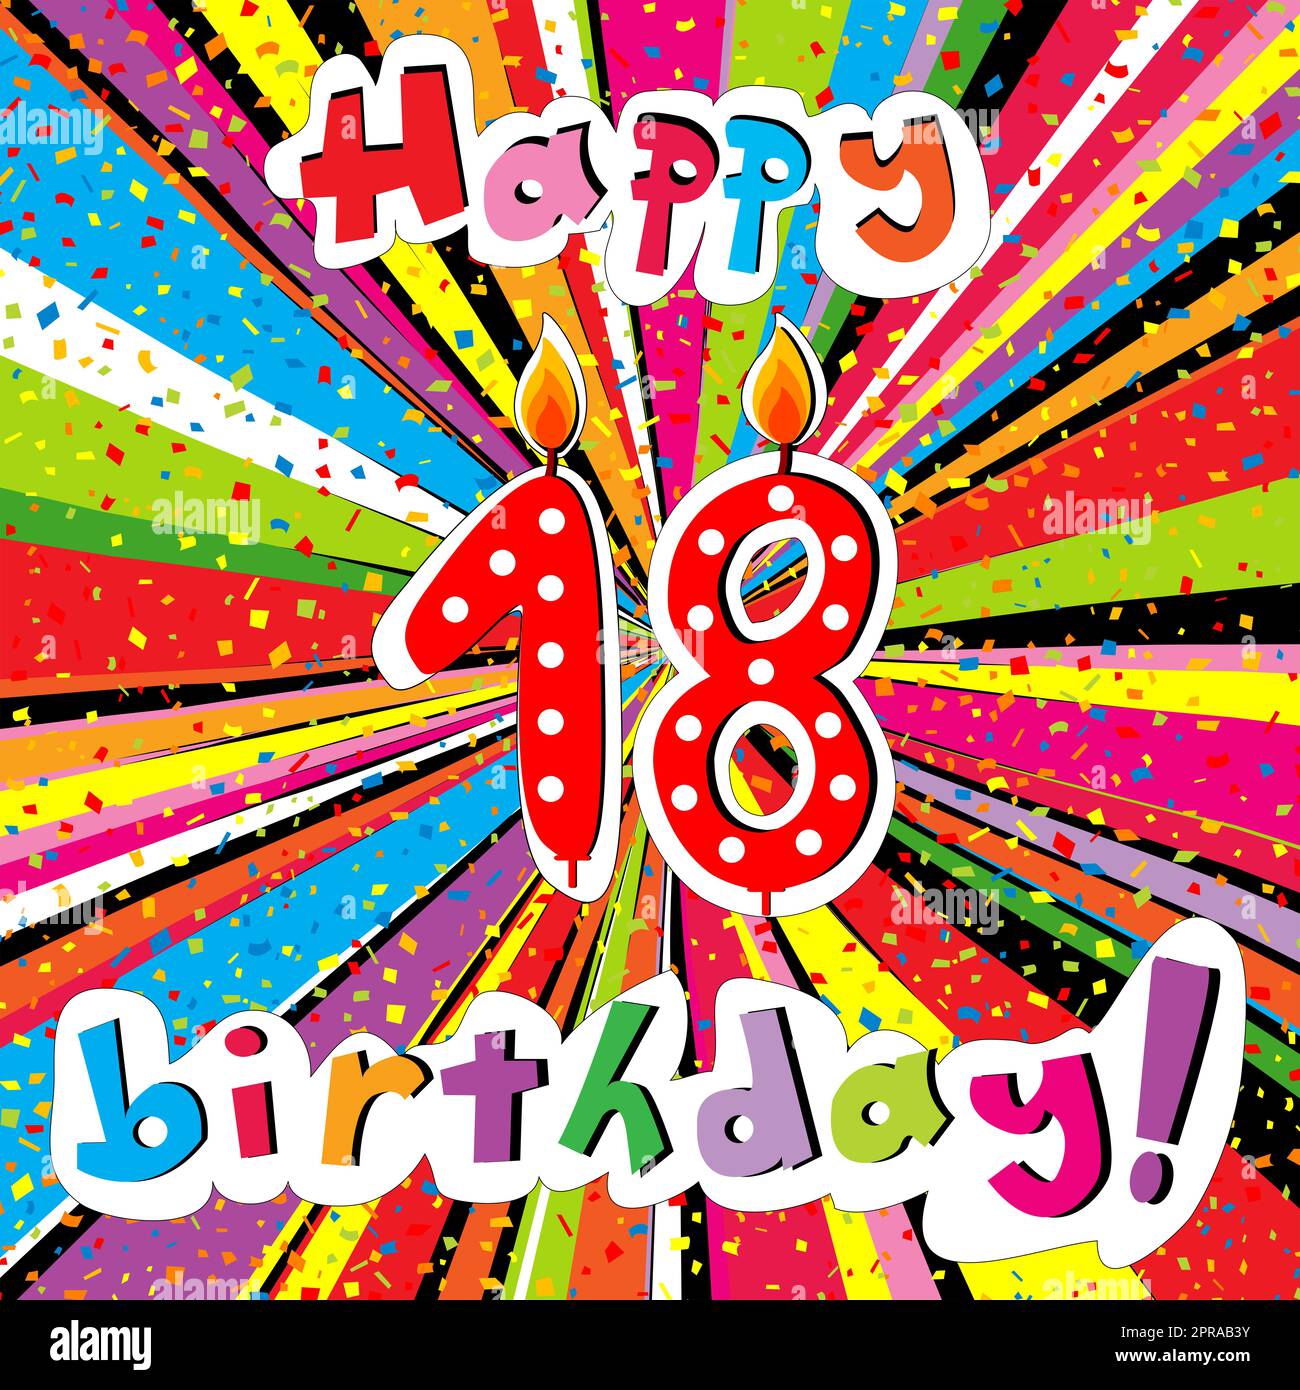 Velas de cumpleaños con el número 18 sobre un fondo de color rosa con  espacio para texto Fotografía de stock - Alamy